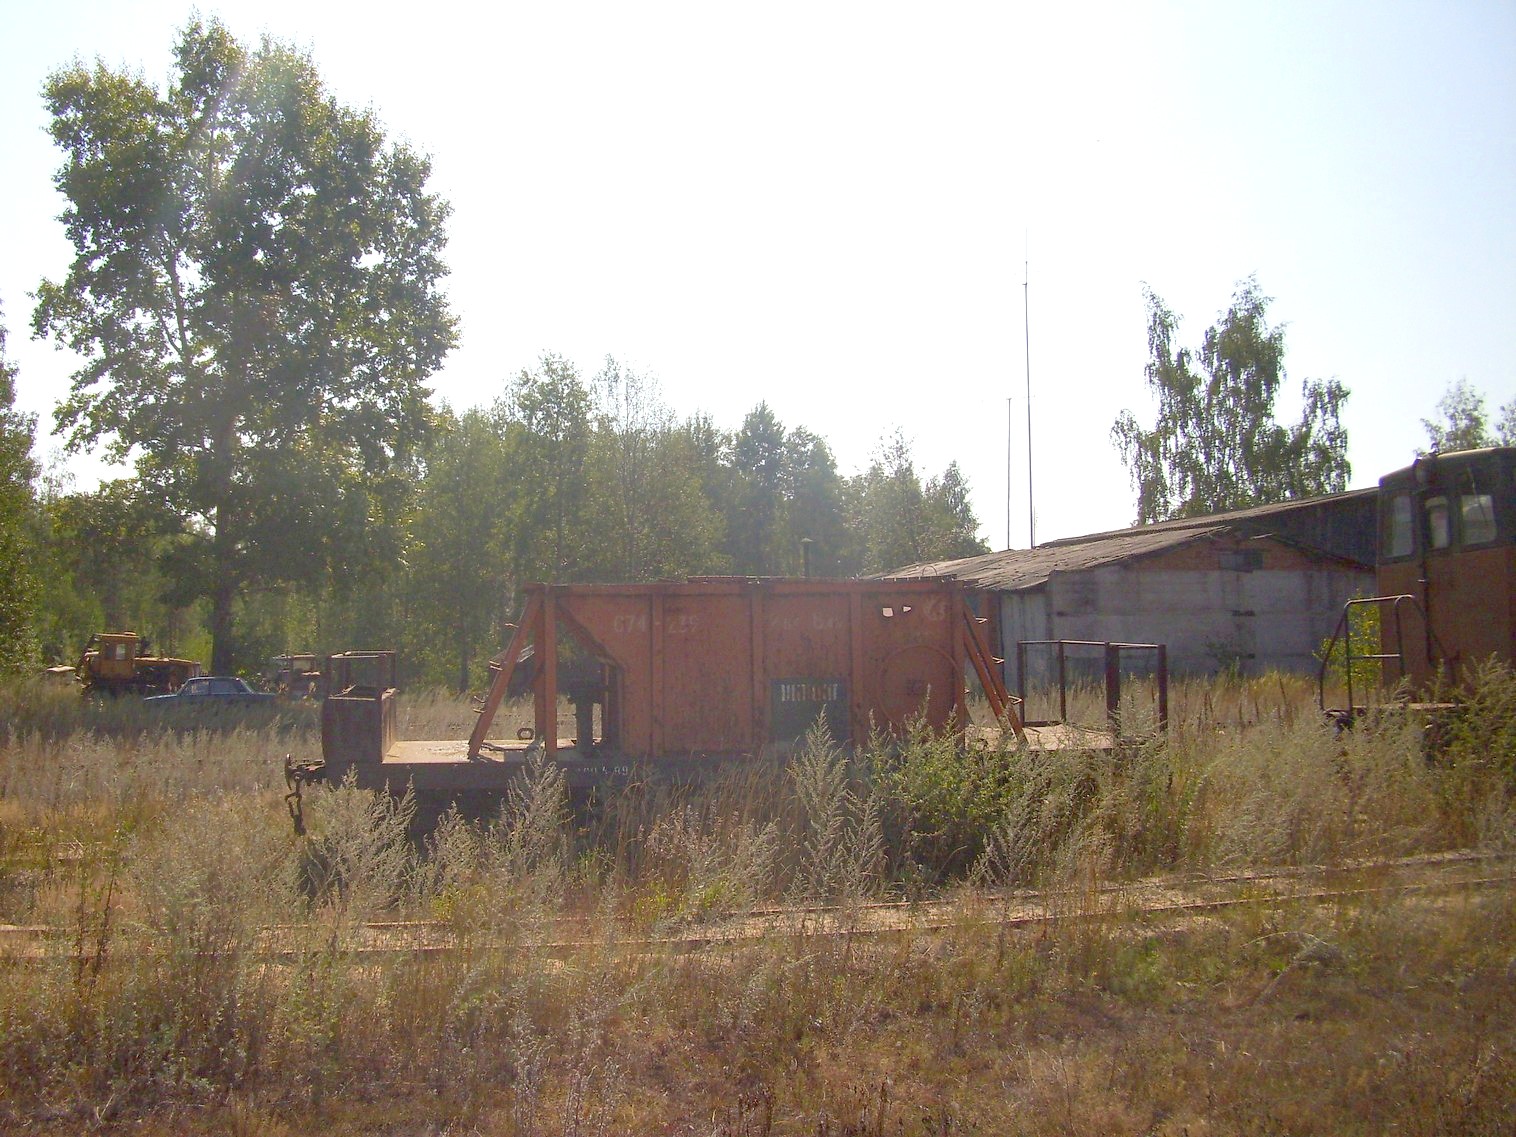 Узкоколейная железная дорога Солотчинского торфопредприятия — фотографии, сделанные в 2011 году (часть 2)